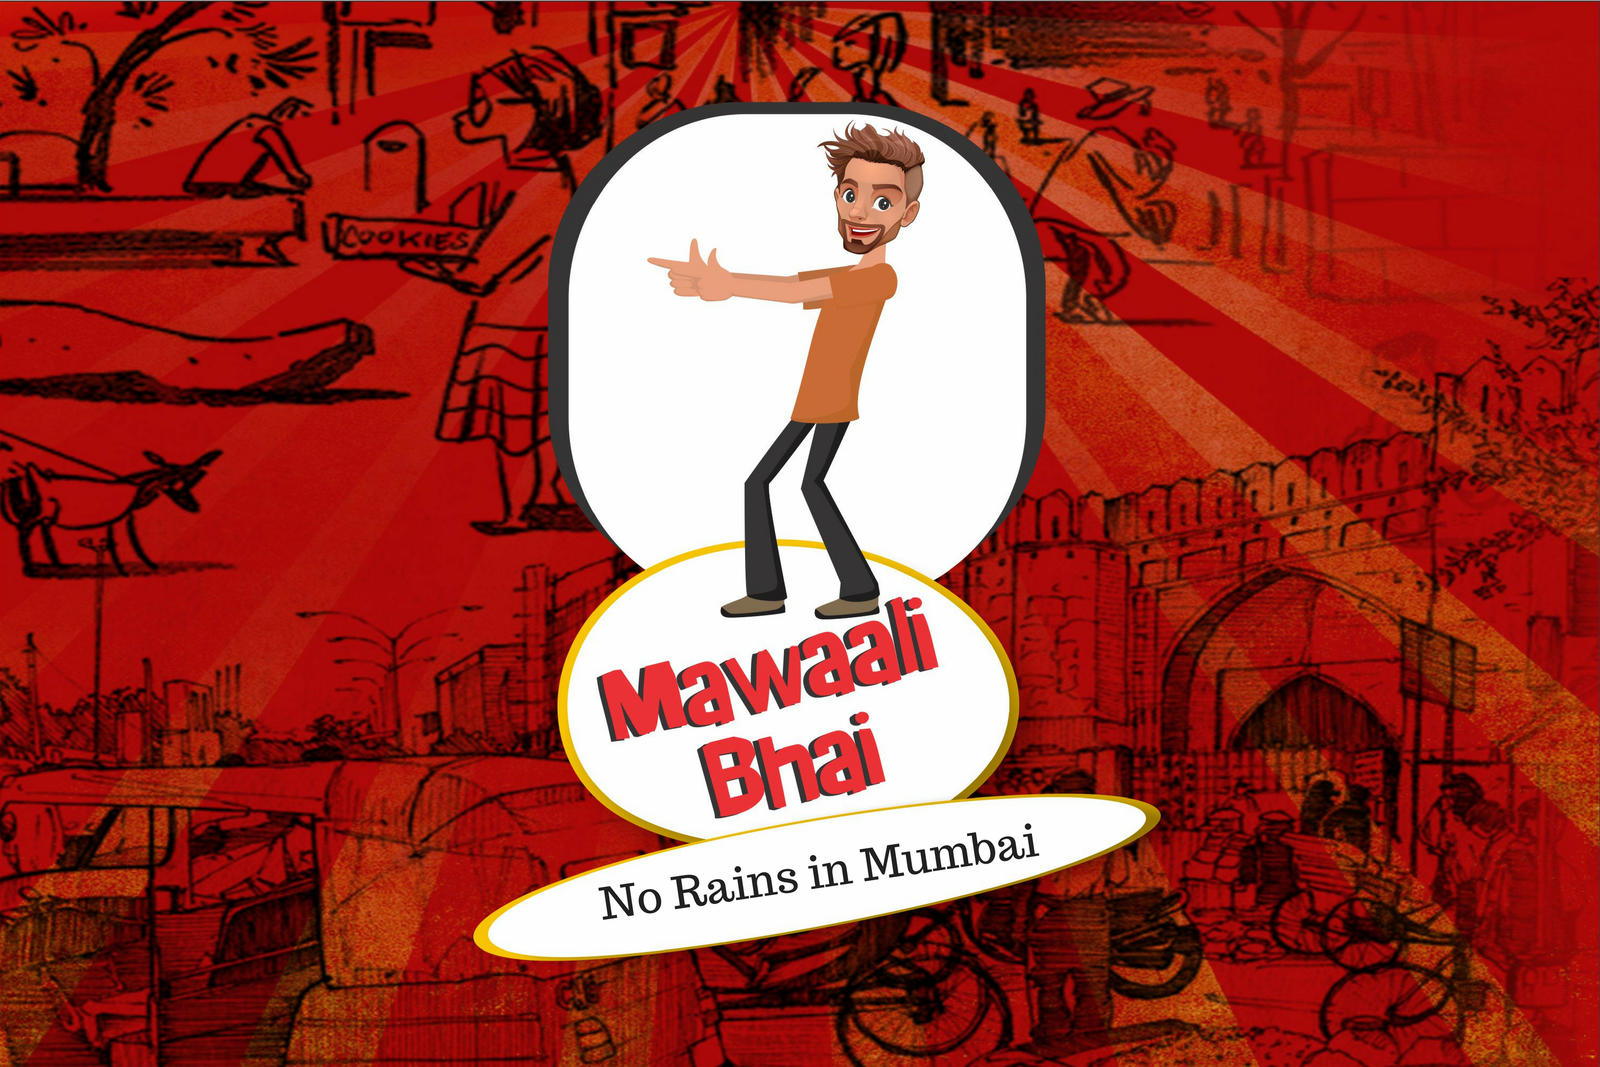 Mawaali Bhai - No Rains in Mumbai